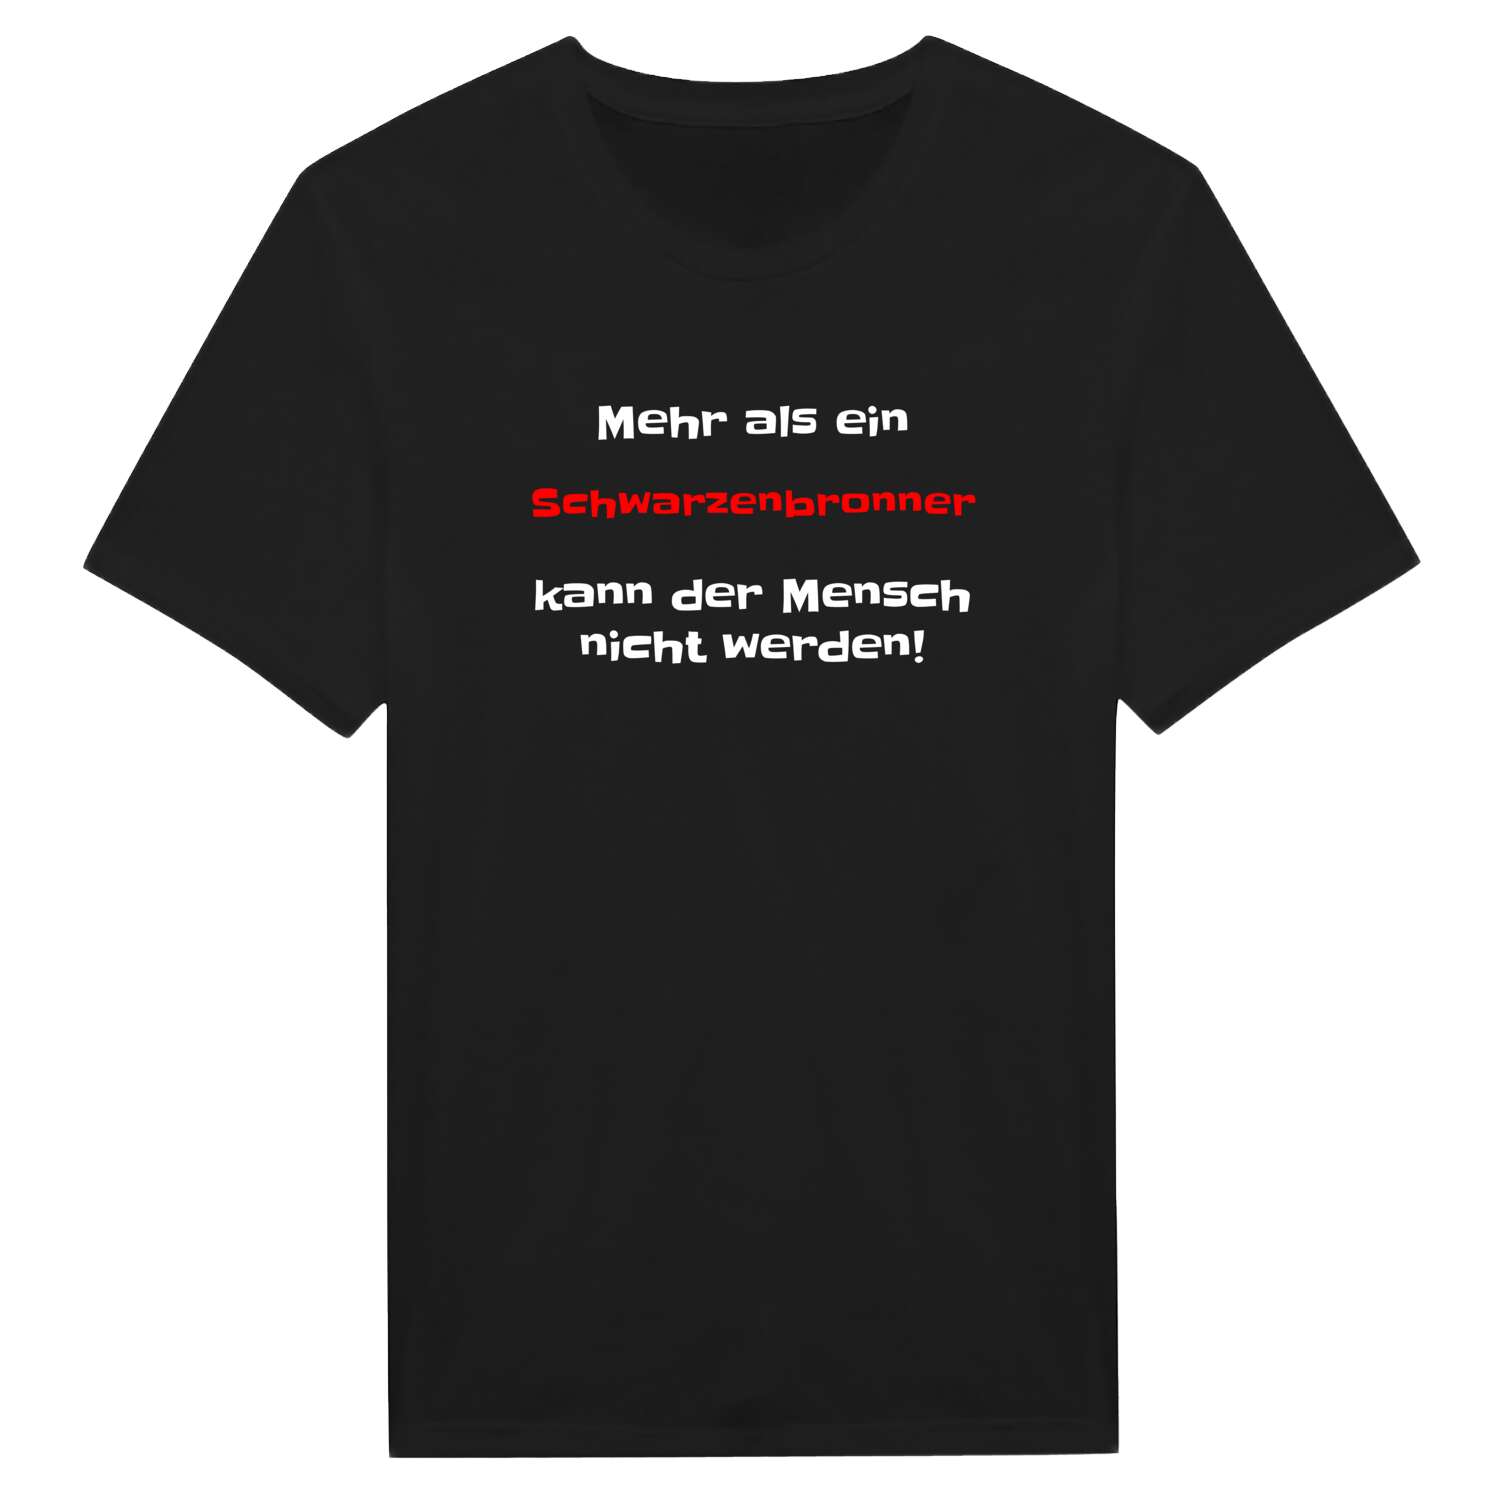 Schwarzenbronn T-Shirt »Mehr als ein«